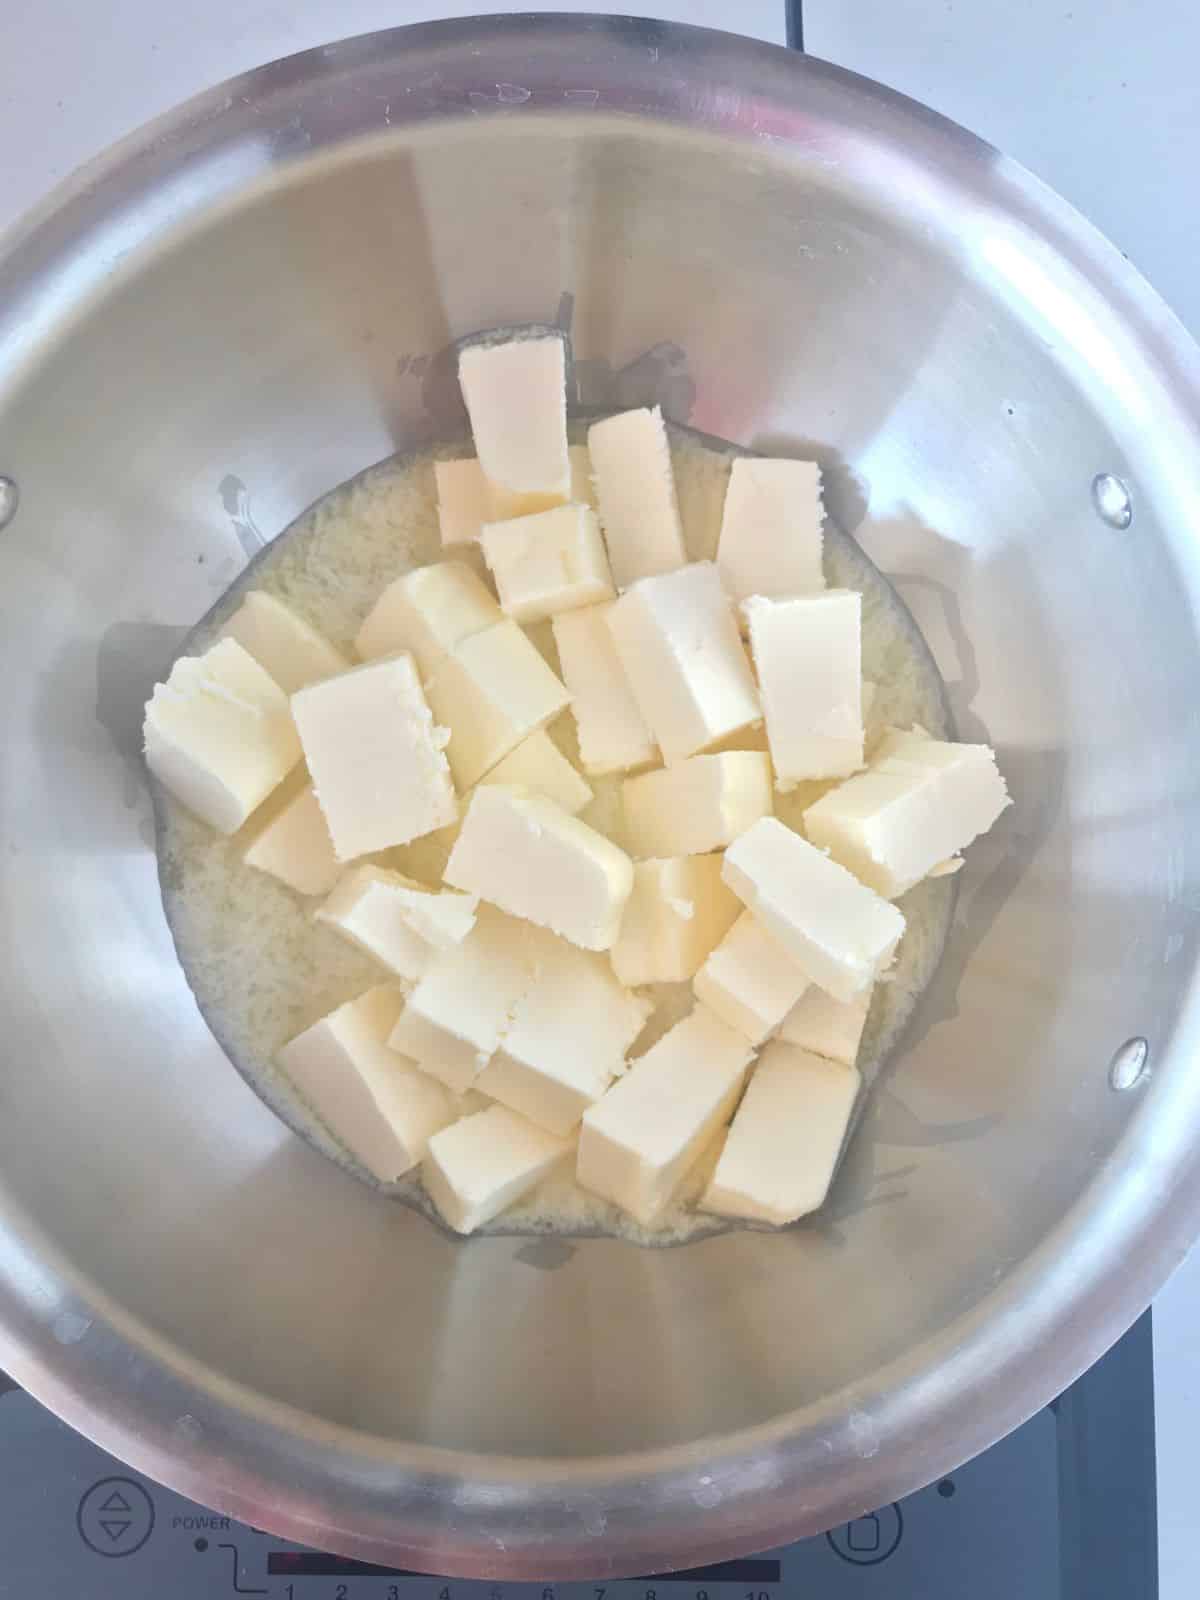 A pot with butter cubes.